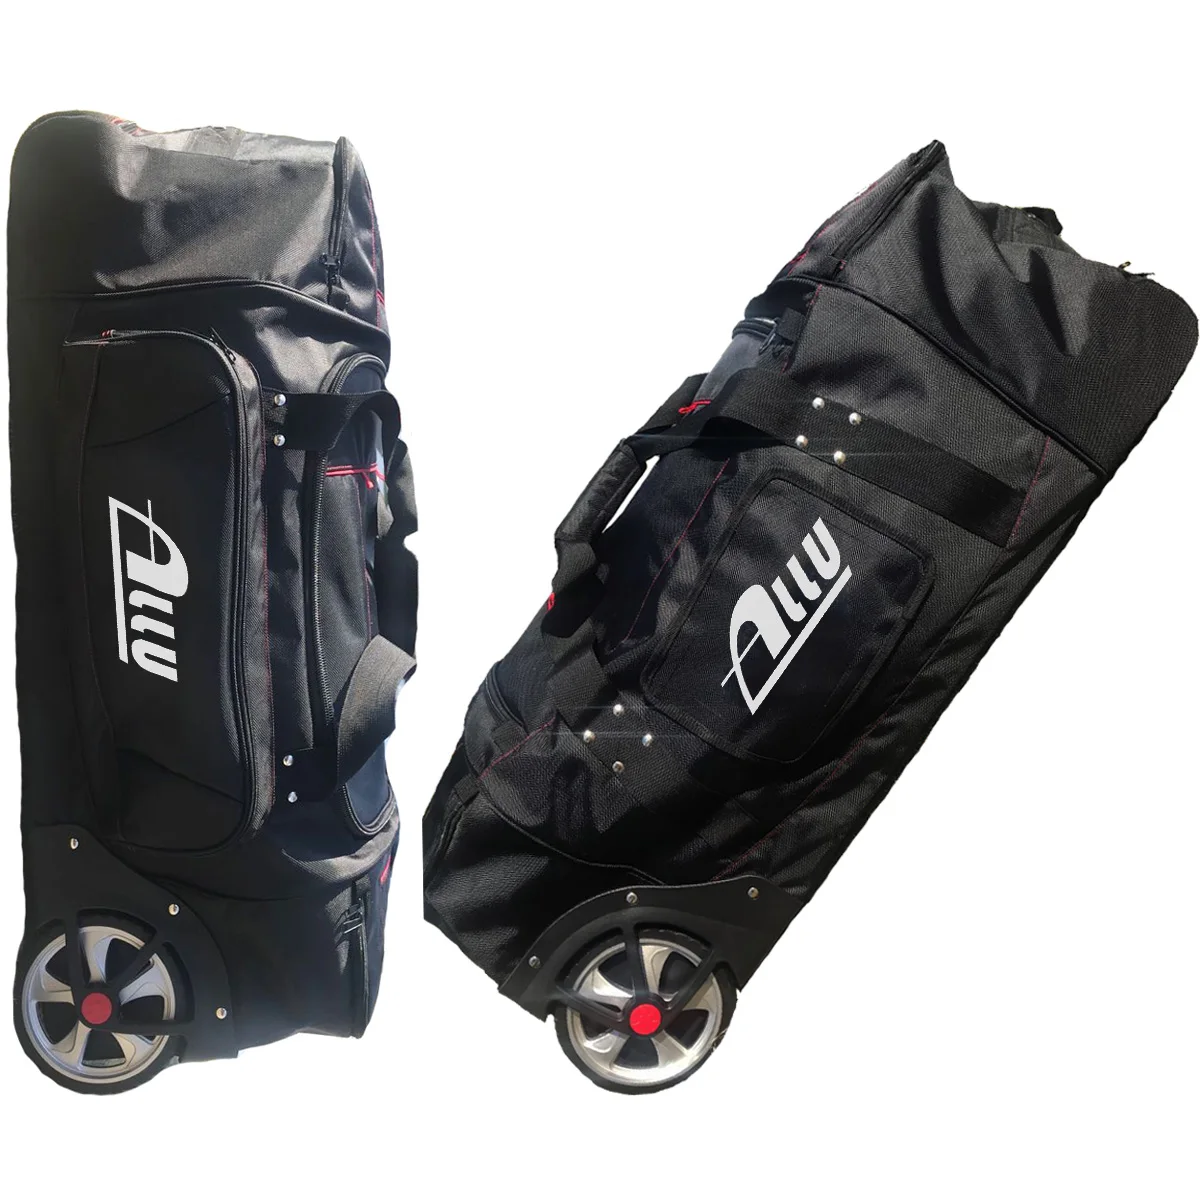 
Hot sale Luggage bag travel luggage Fashion Sports Trolley bag  (60744573380)